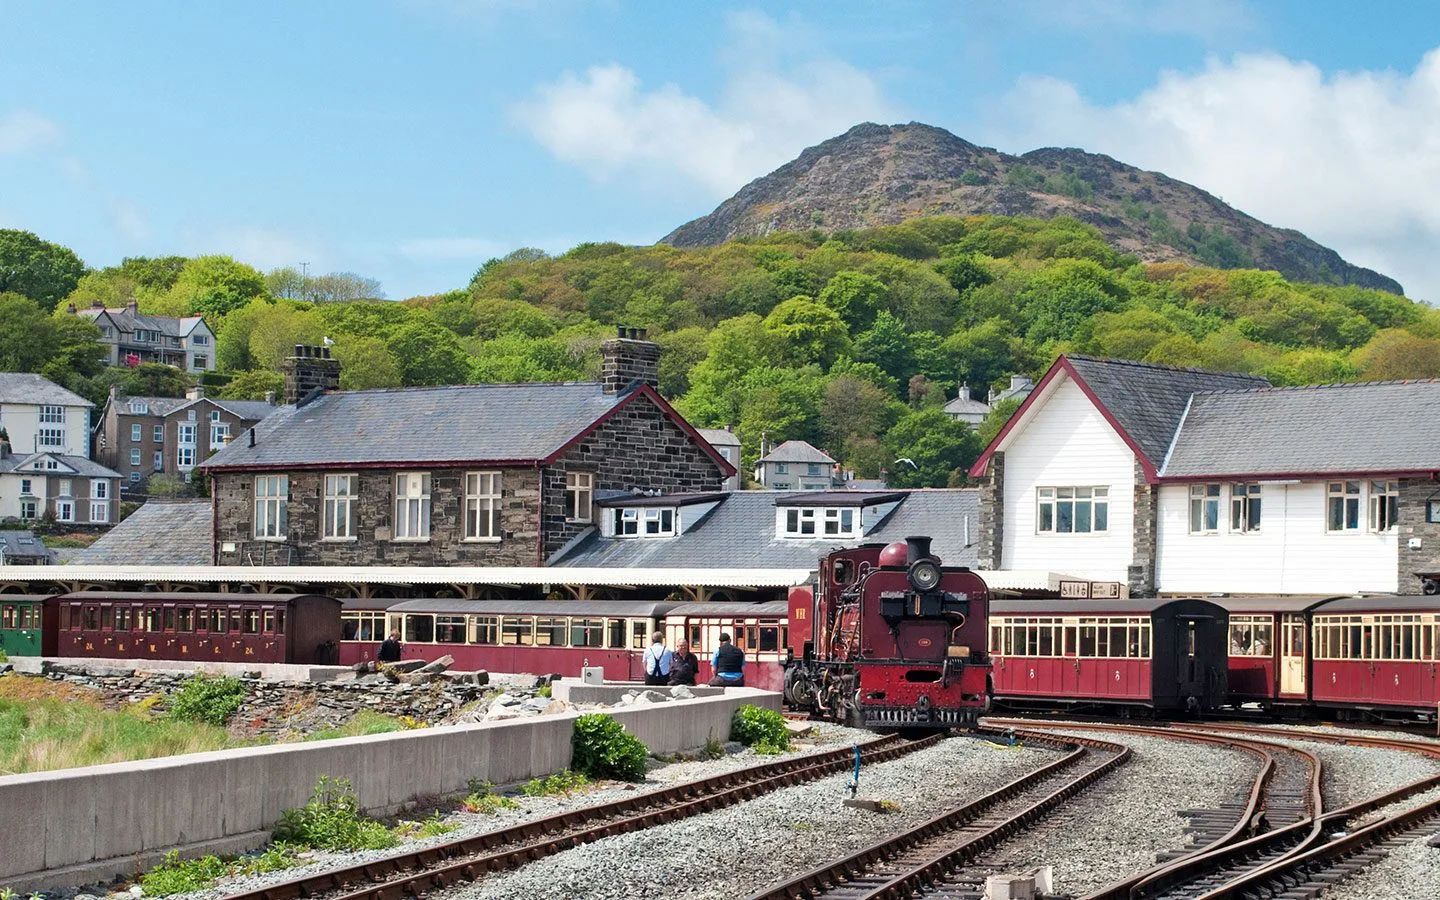 The Ffestiniog Railway in Wales